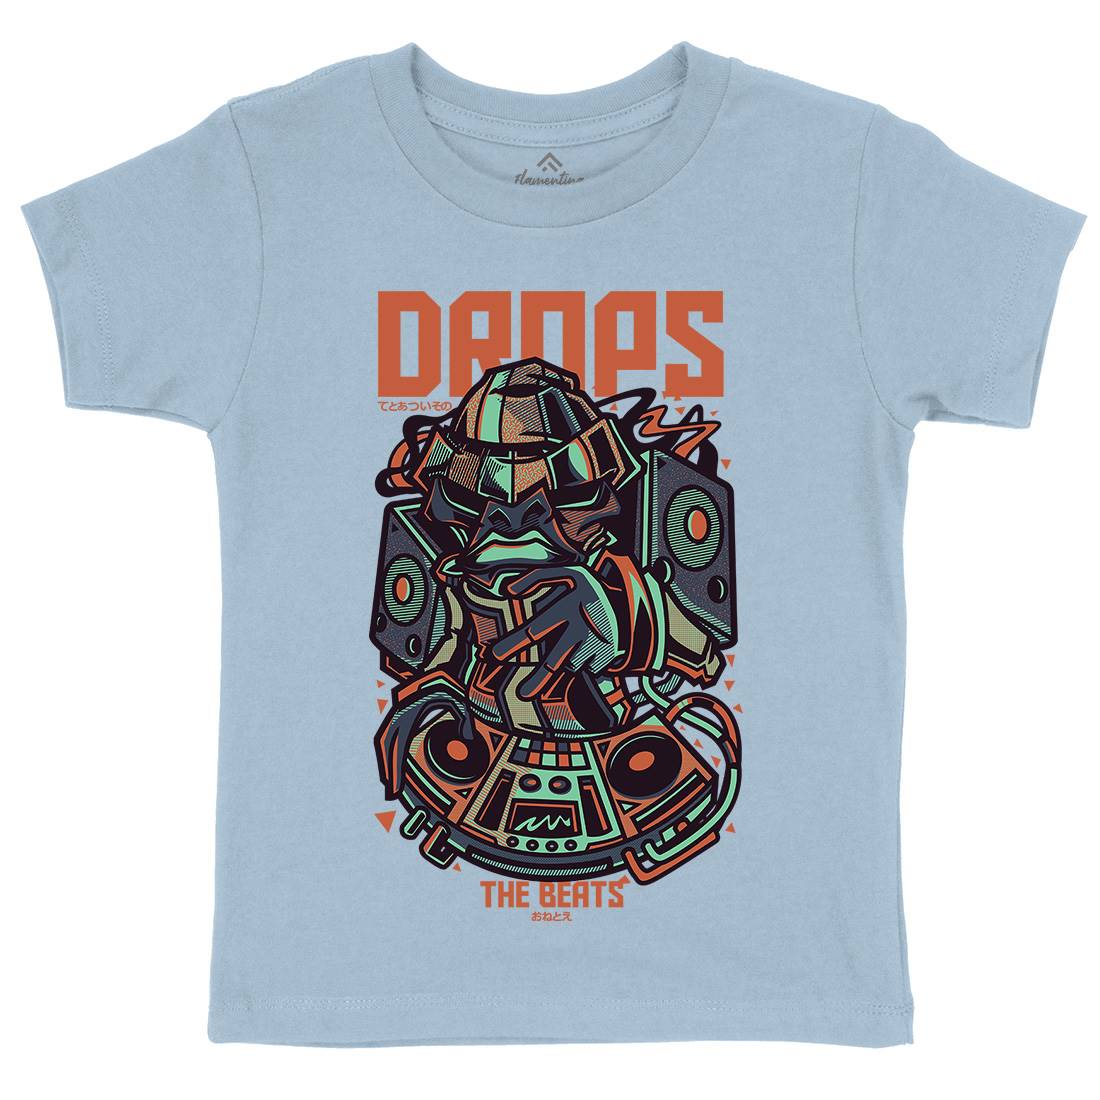 Drops Beats Kids Crew Neck T-Shirt Music D761